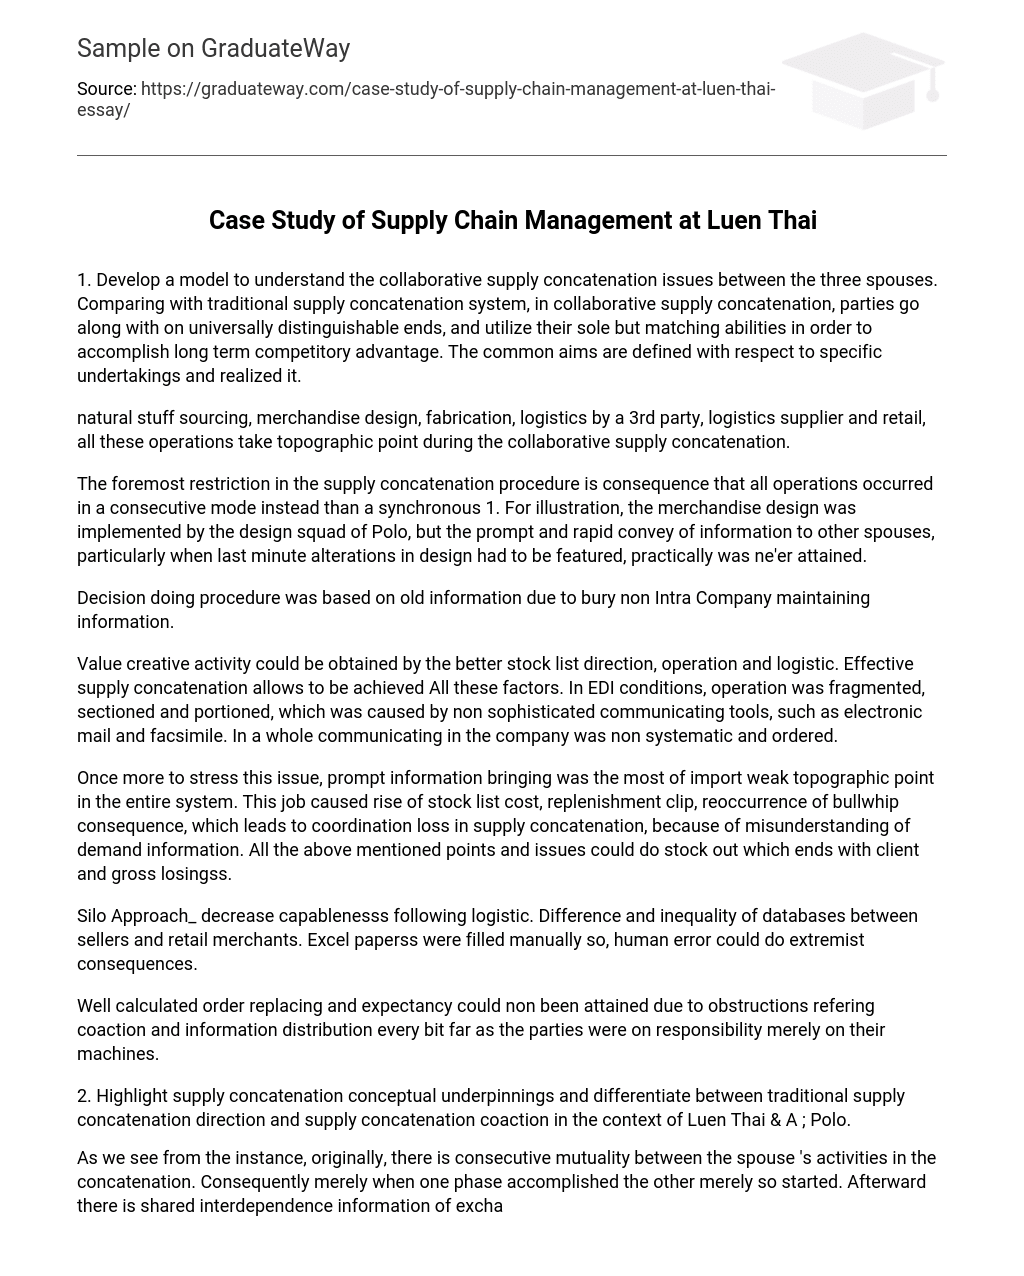 Case Study of Supply Chain Management at Luen Thai